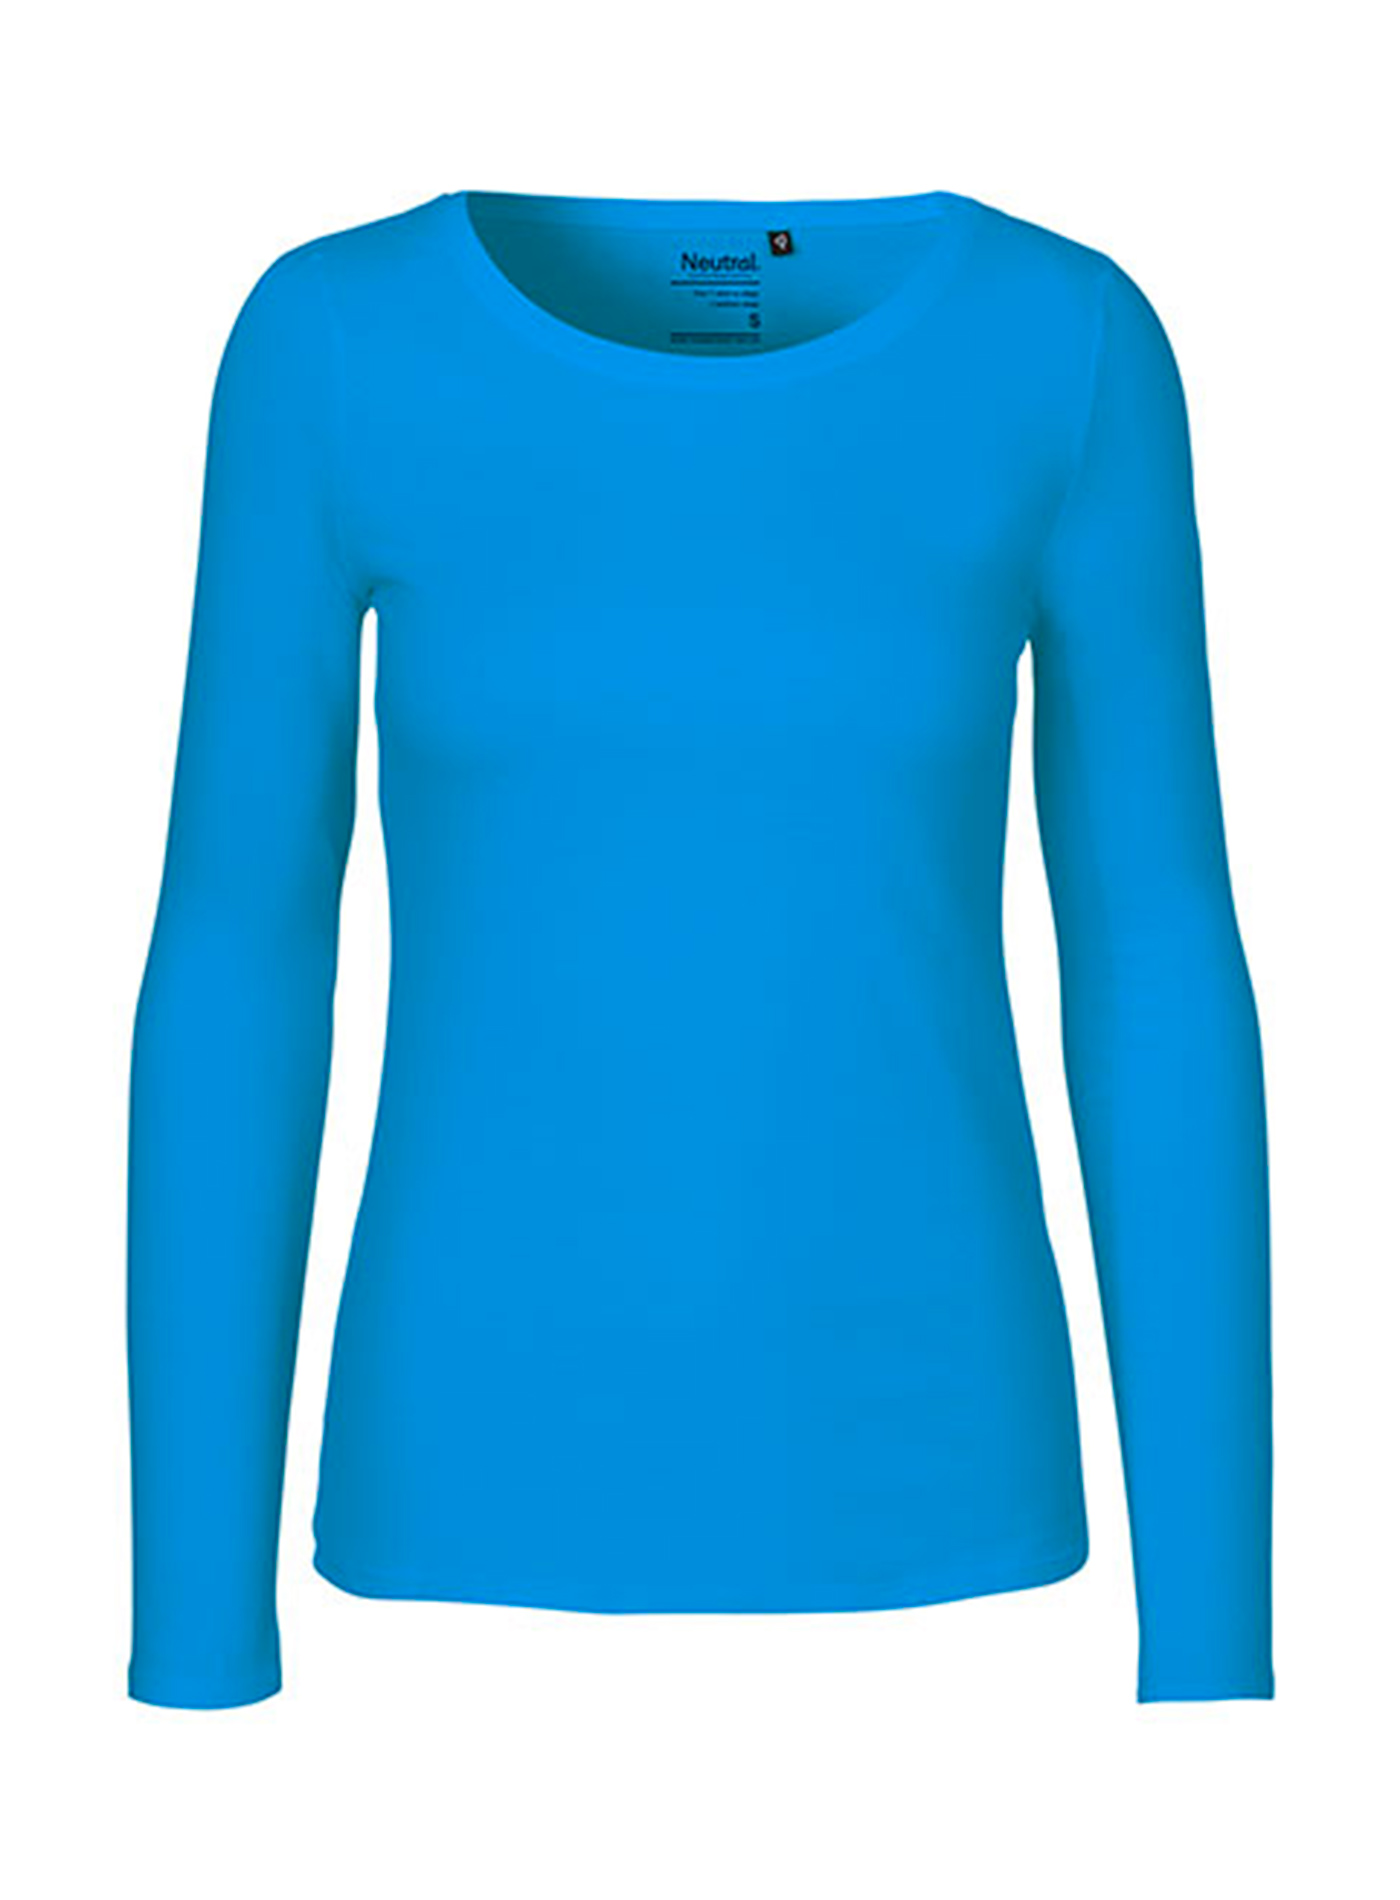 Dámské tričko s dlouhým rukávem Neutral - Safírově modrá XL